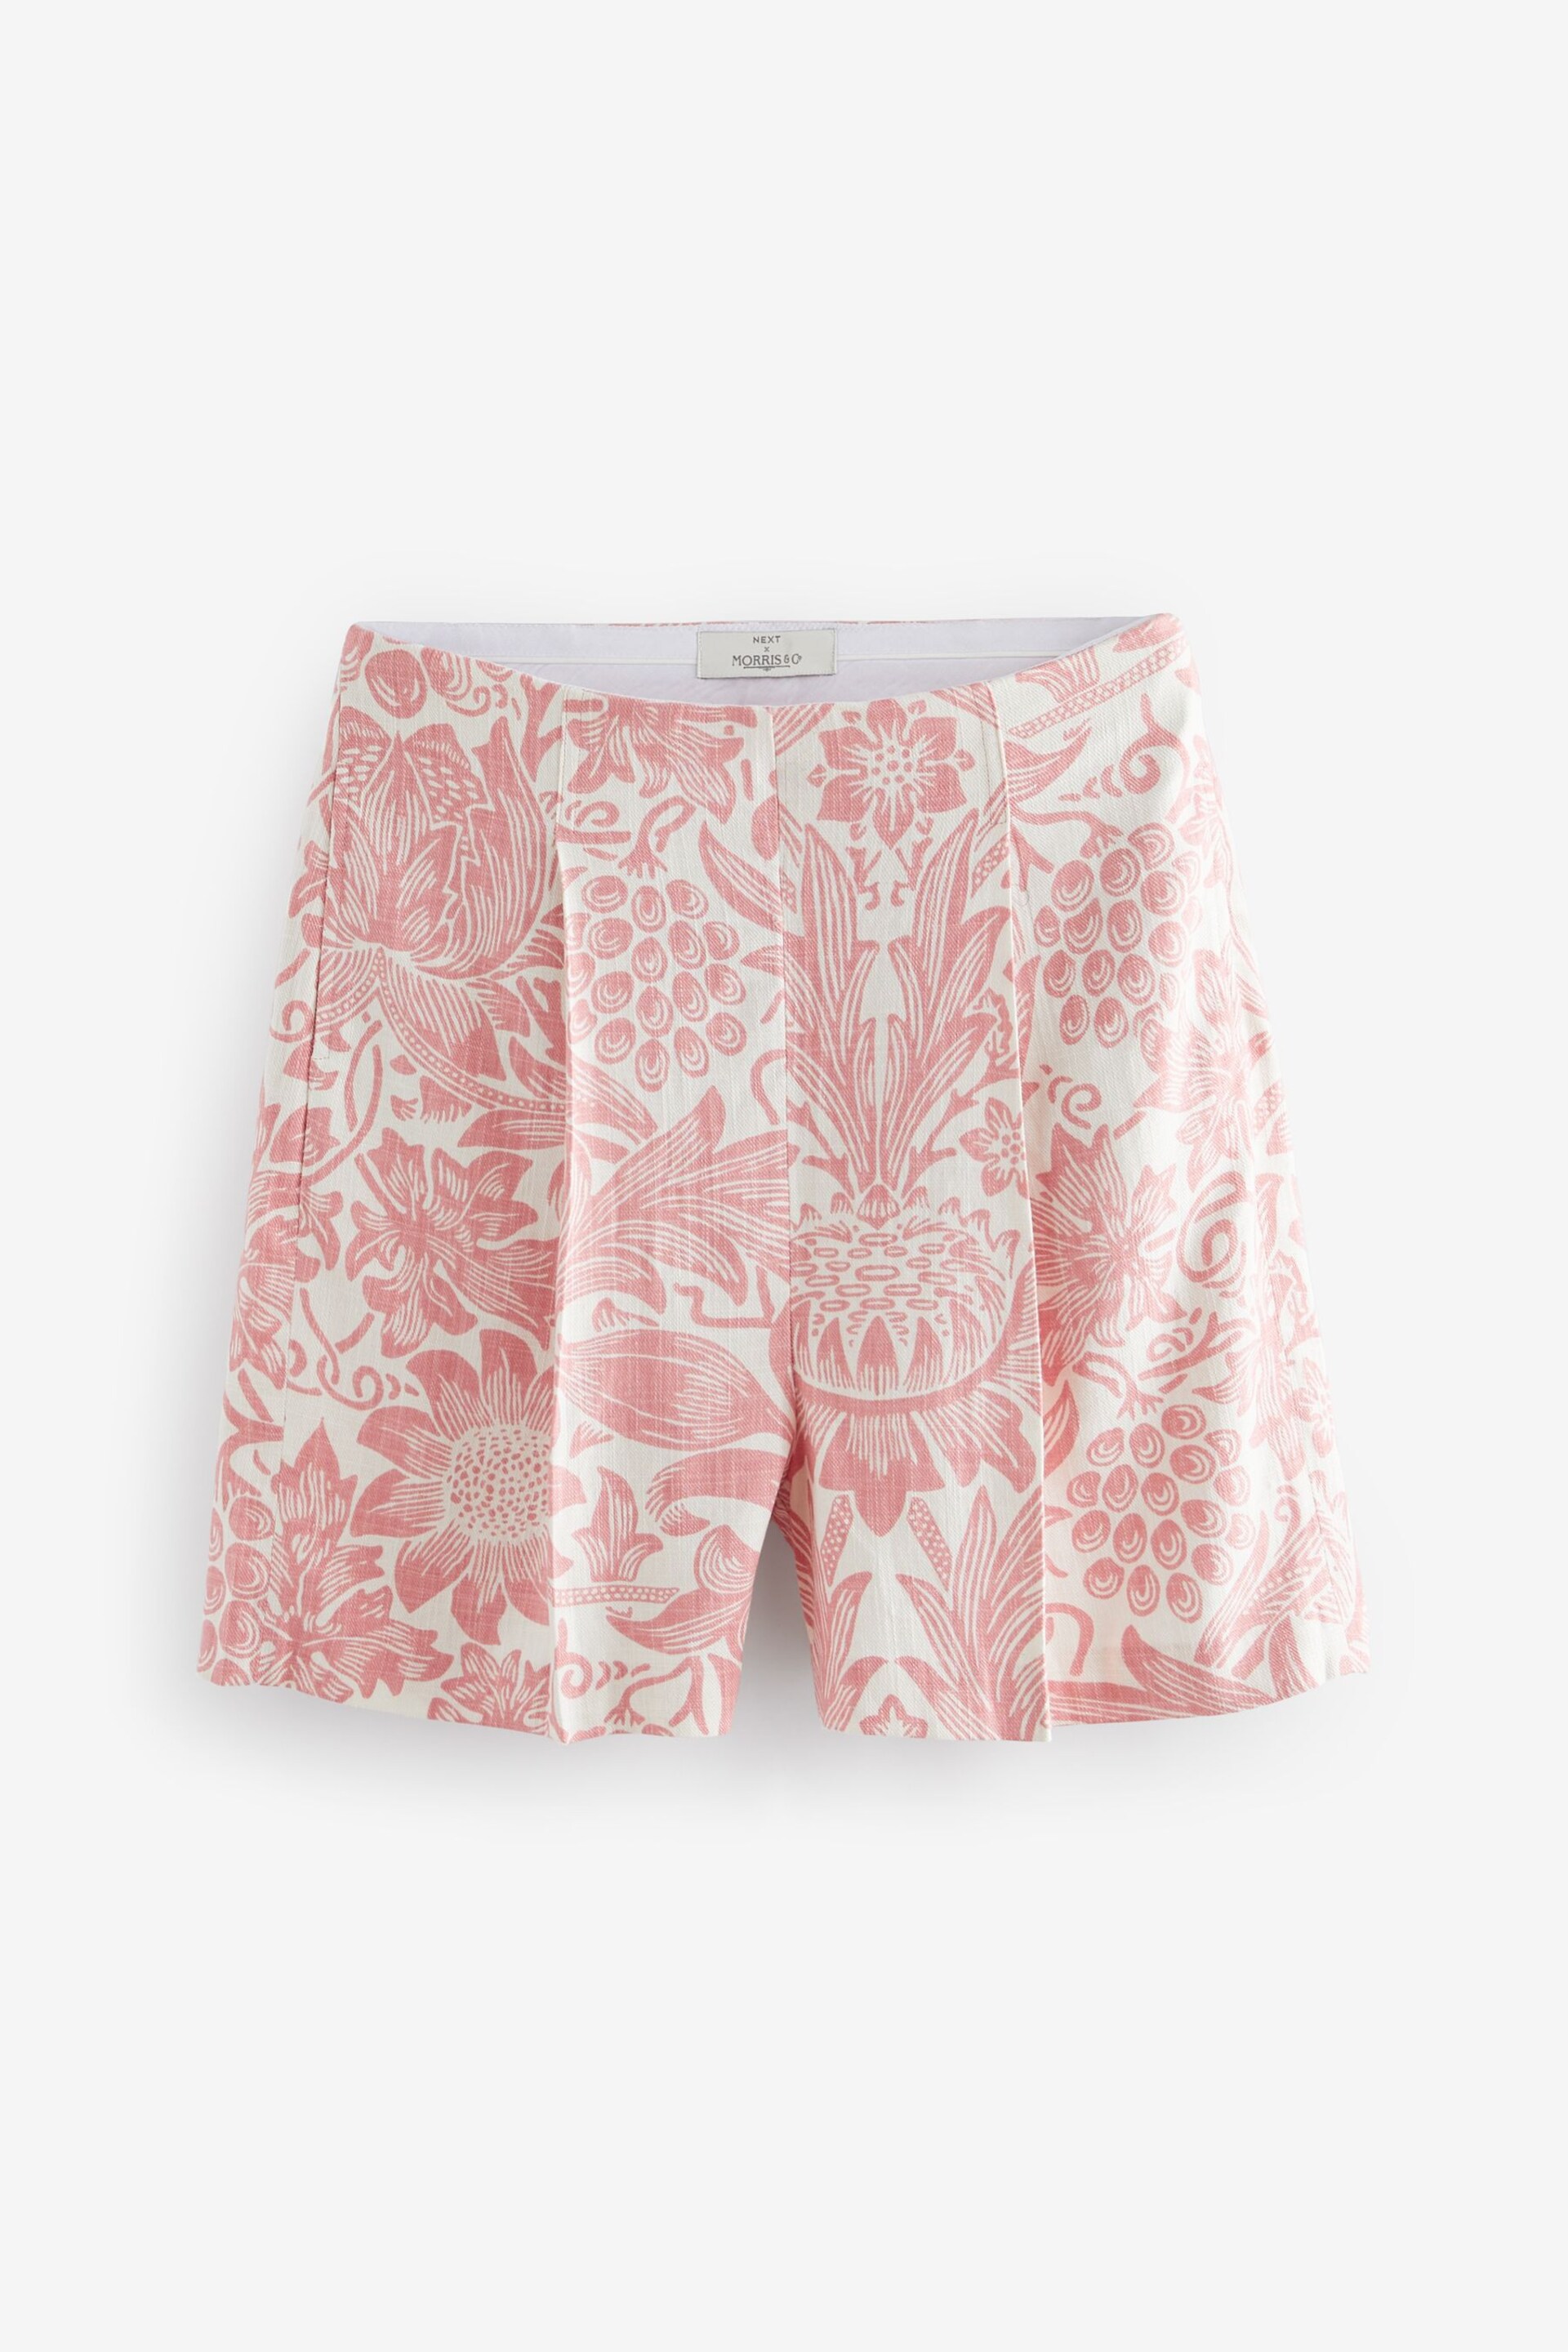 Pink William Morris Linen Blend Shorts - Image 5 of 6